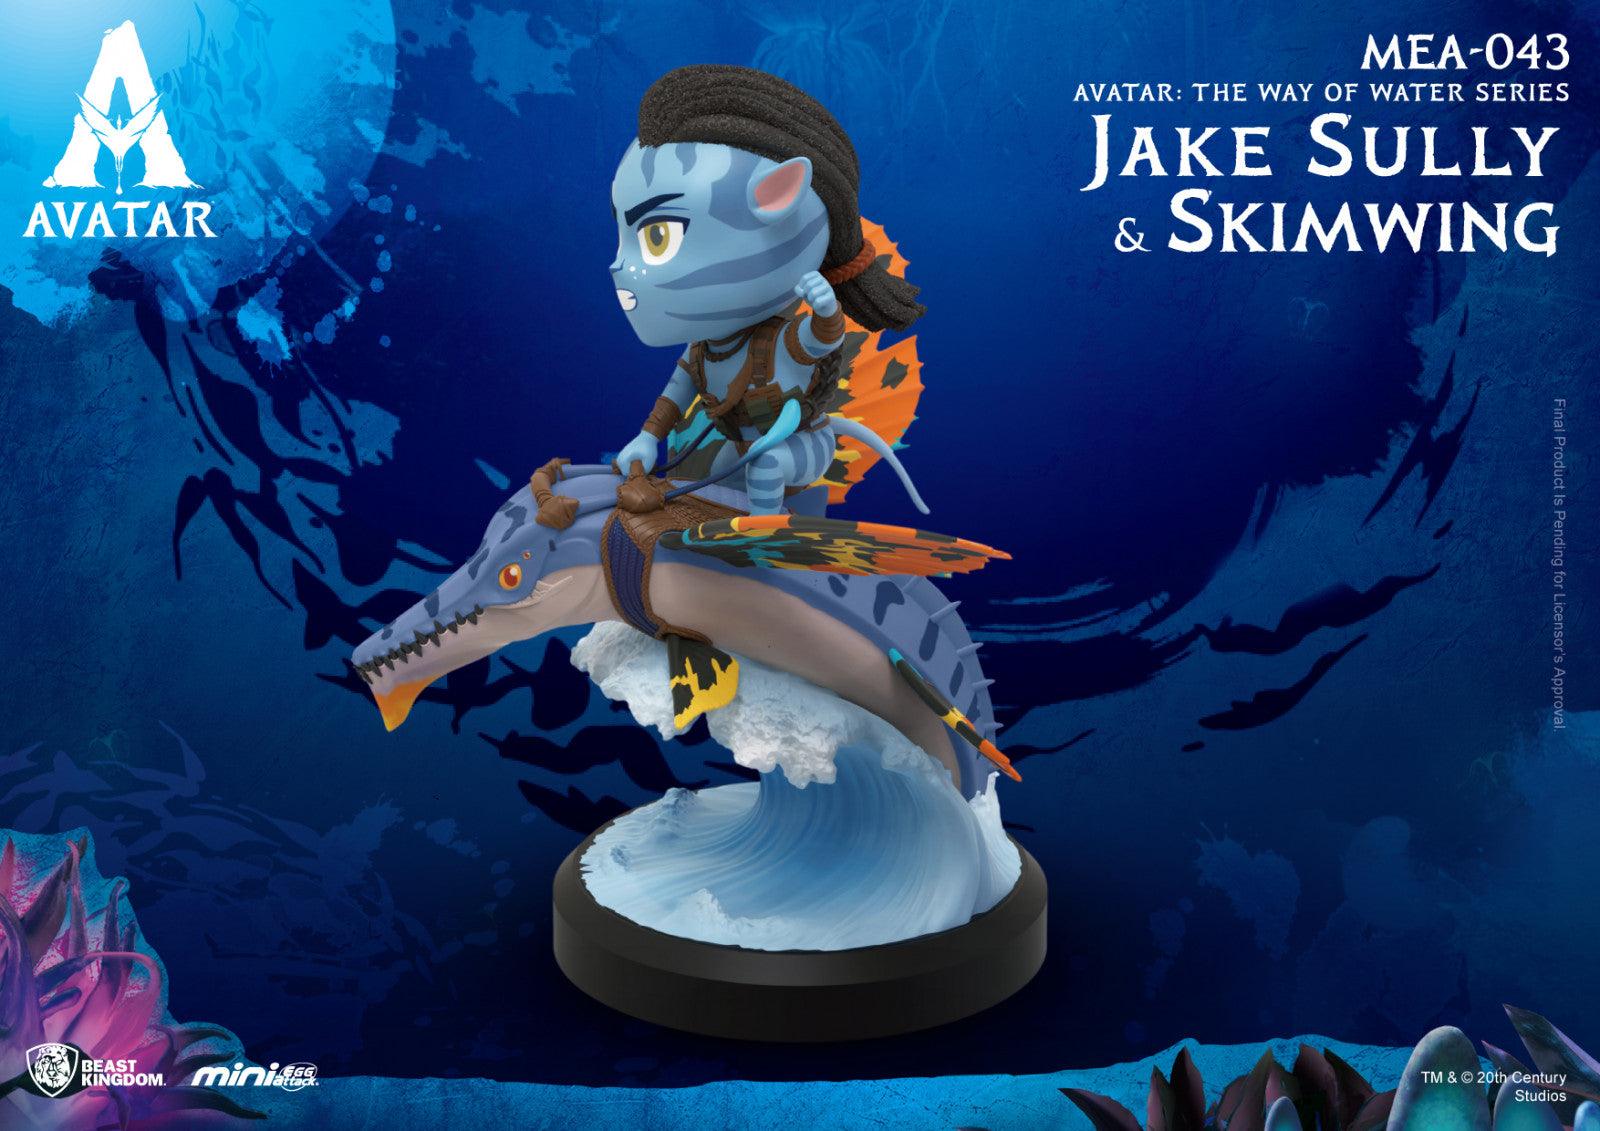 VR-102133 Beast Kingdom Mini Egg Attack Avatar the Way of Water Series Jake Sully & Skimwing - Beast Kingdom - Titan Pop Culture